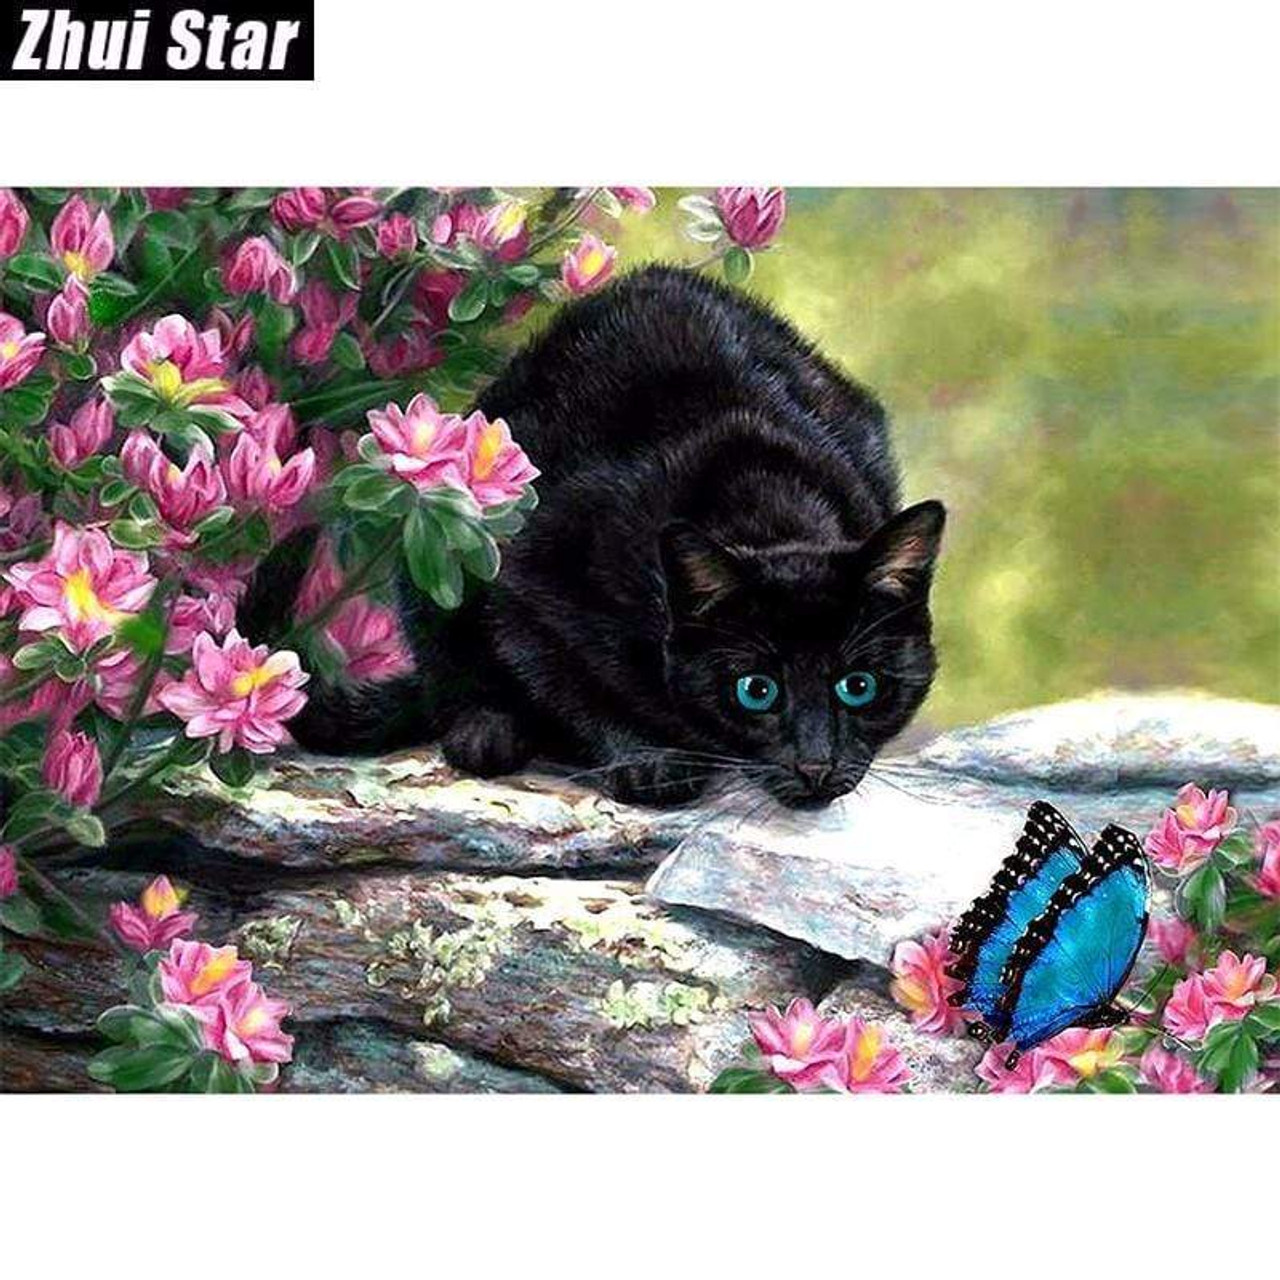 5D Diamond Painting Black Cat Kit - Bonanza Marketplace